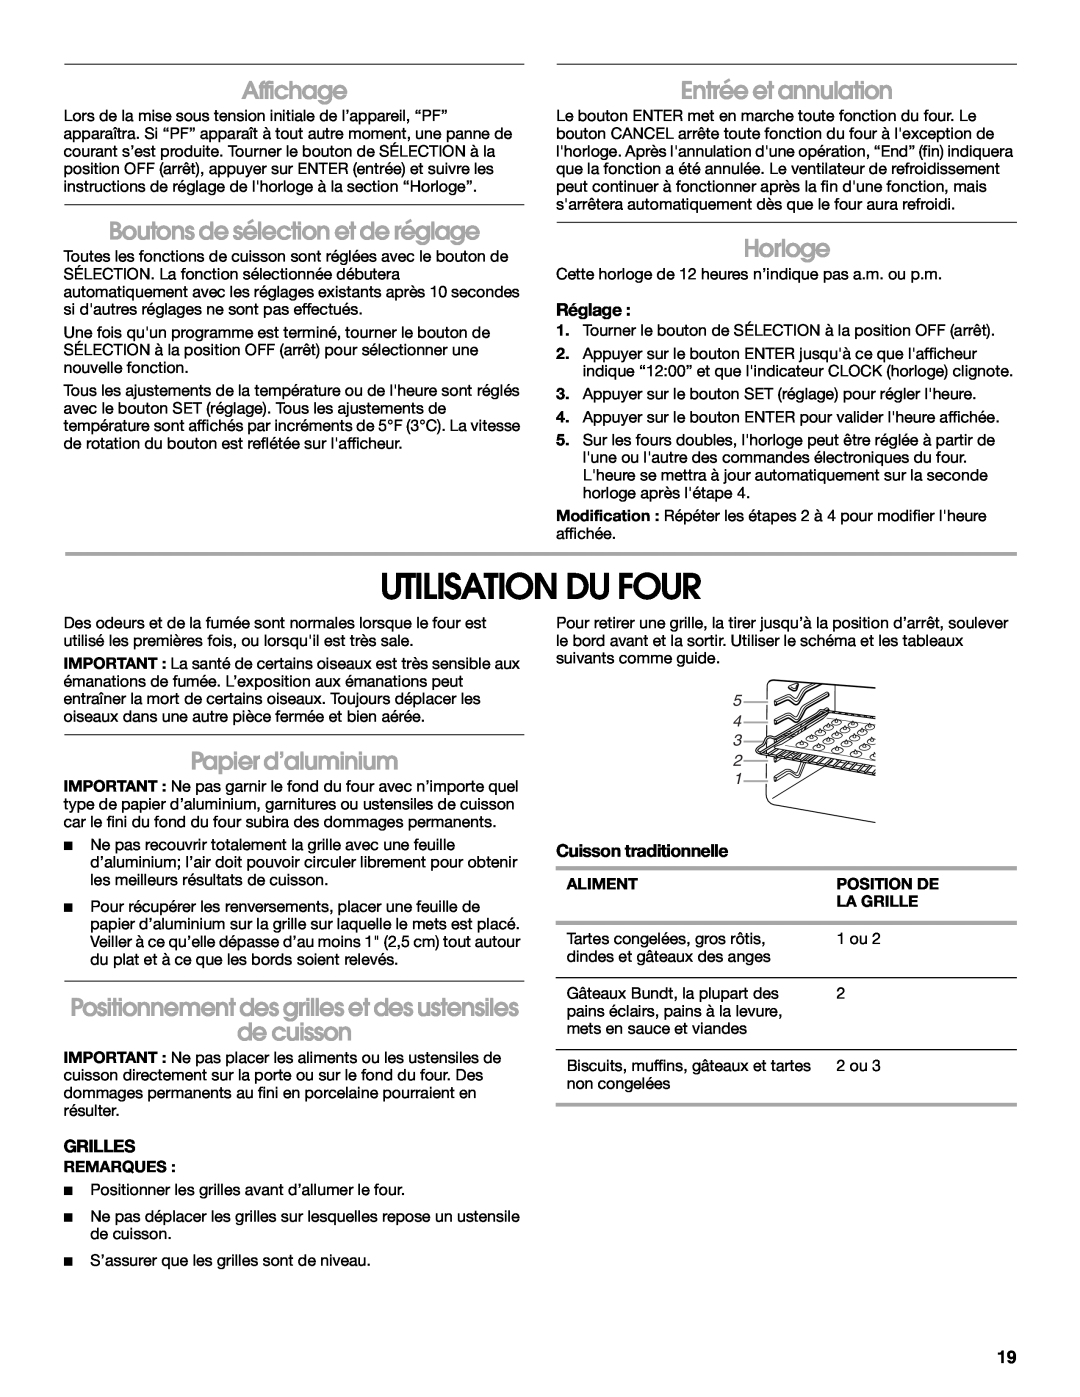 Whirlpool IBS330P manual Utilisation Du Four, Affichage, Entrée et annulation, Boutons de sélection et de réglage, Horloge 